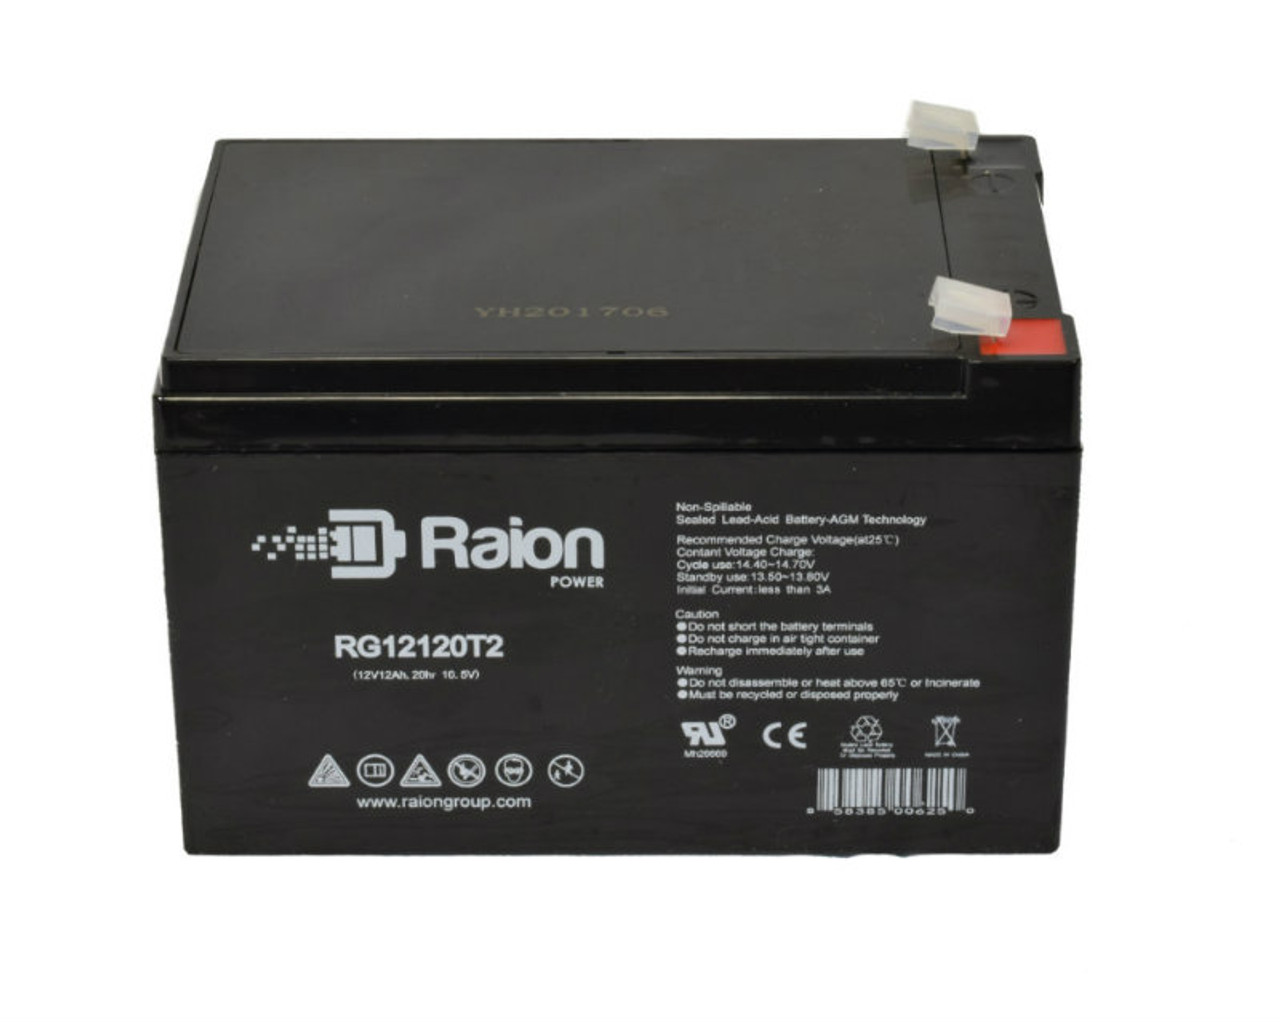 Raion Power RG12120T2 SLA Battery for Henglypower HL12120D